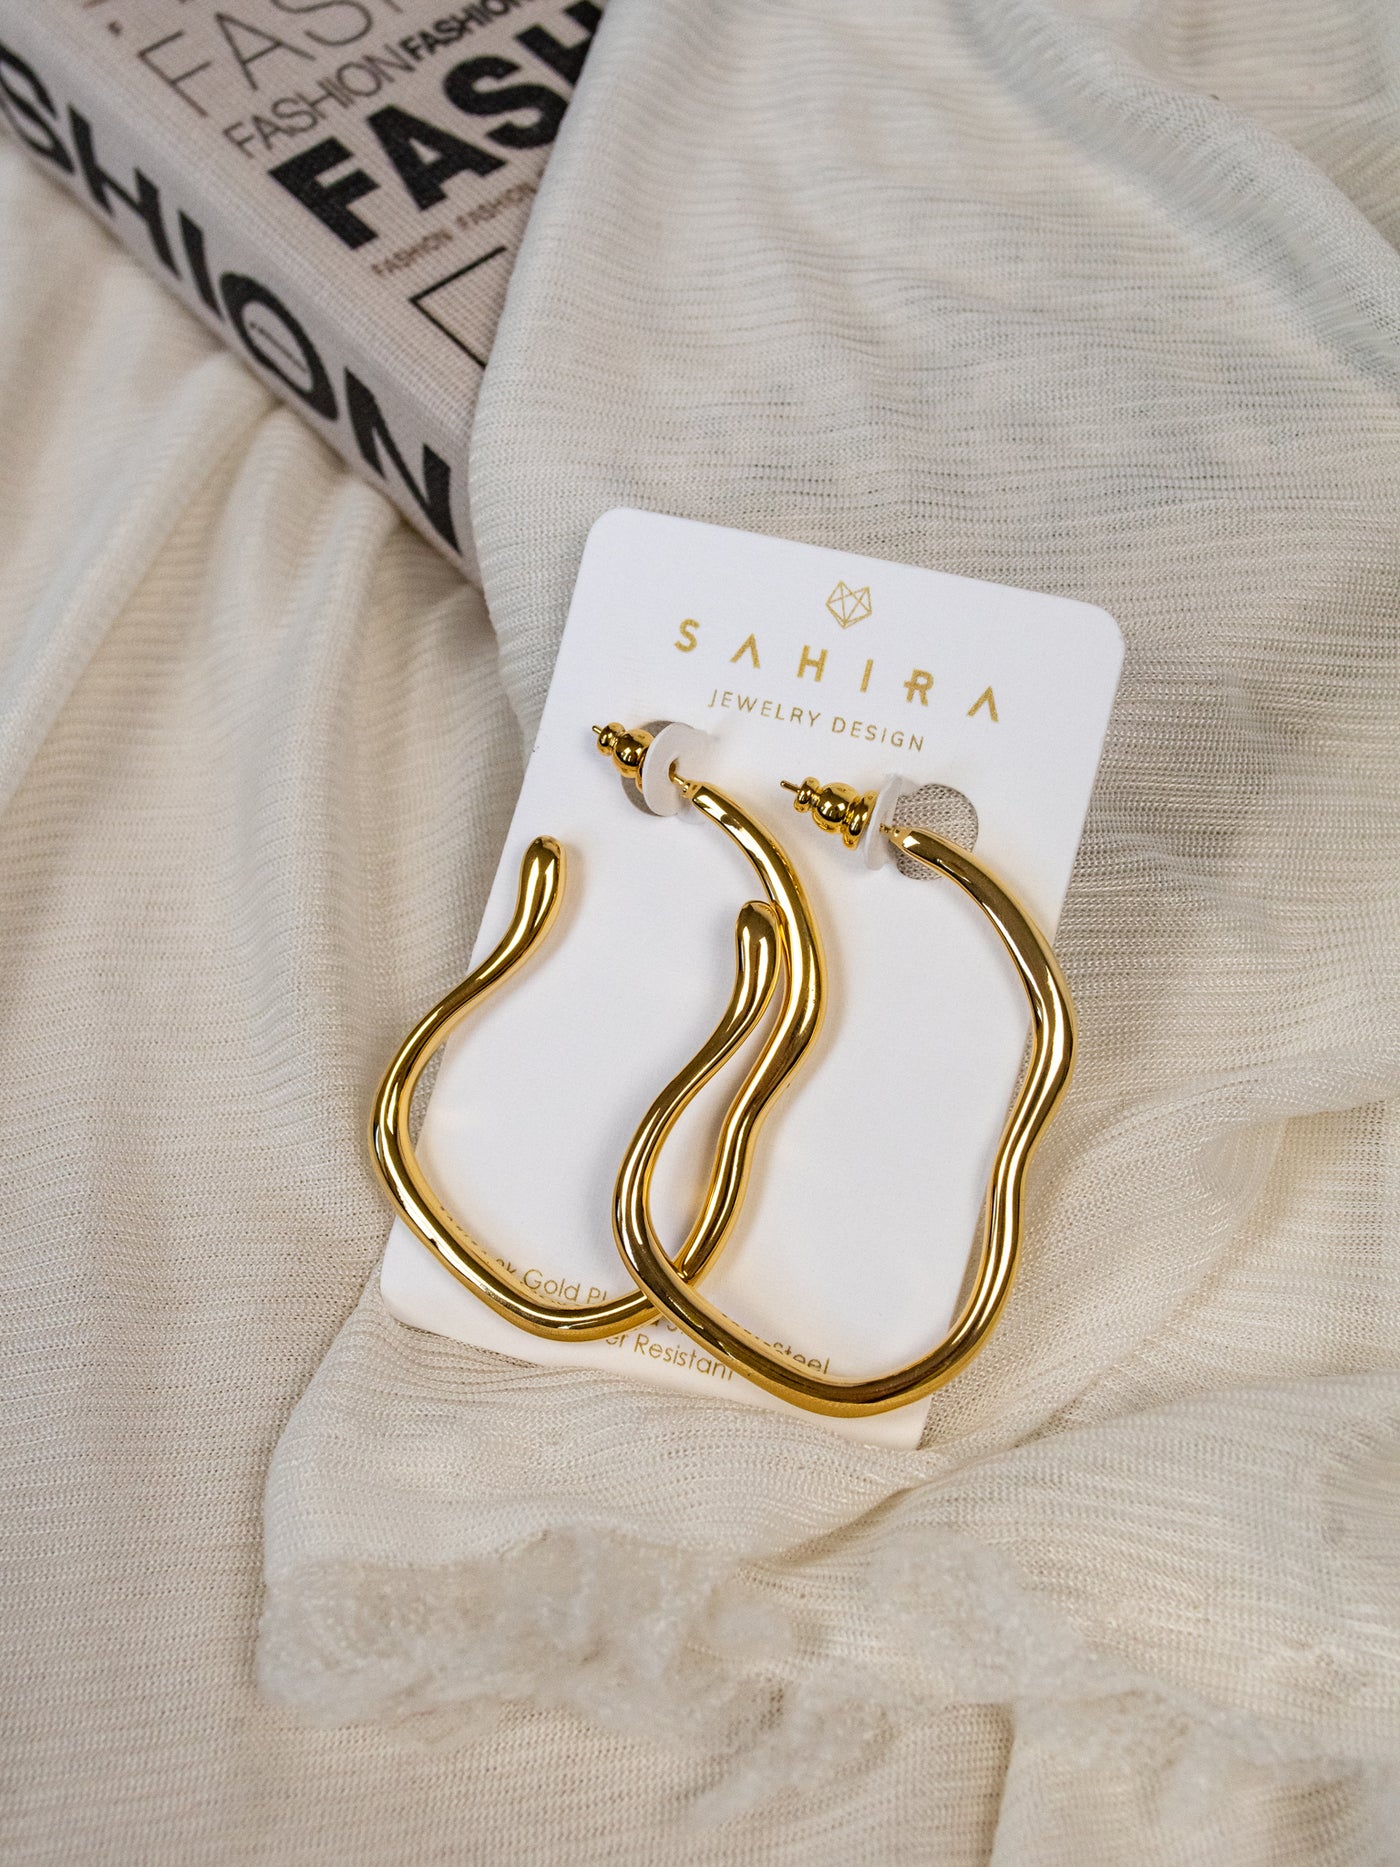 A pair of wavy gold hoop earrings.